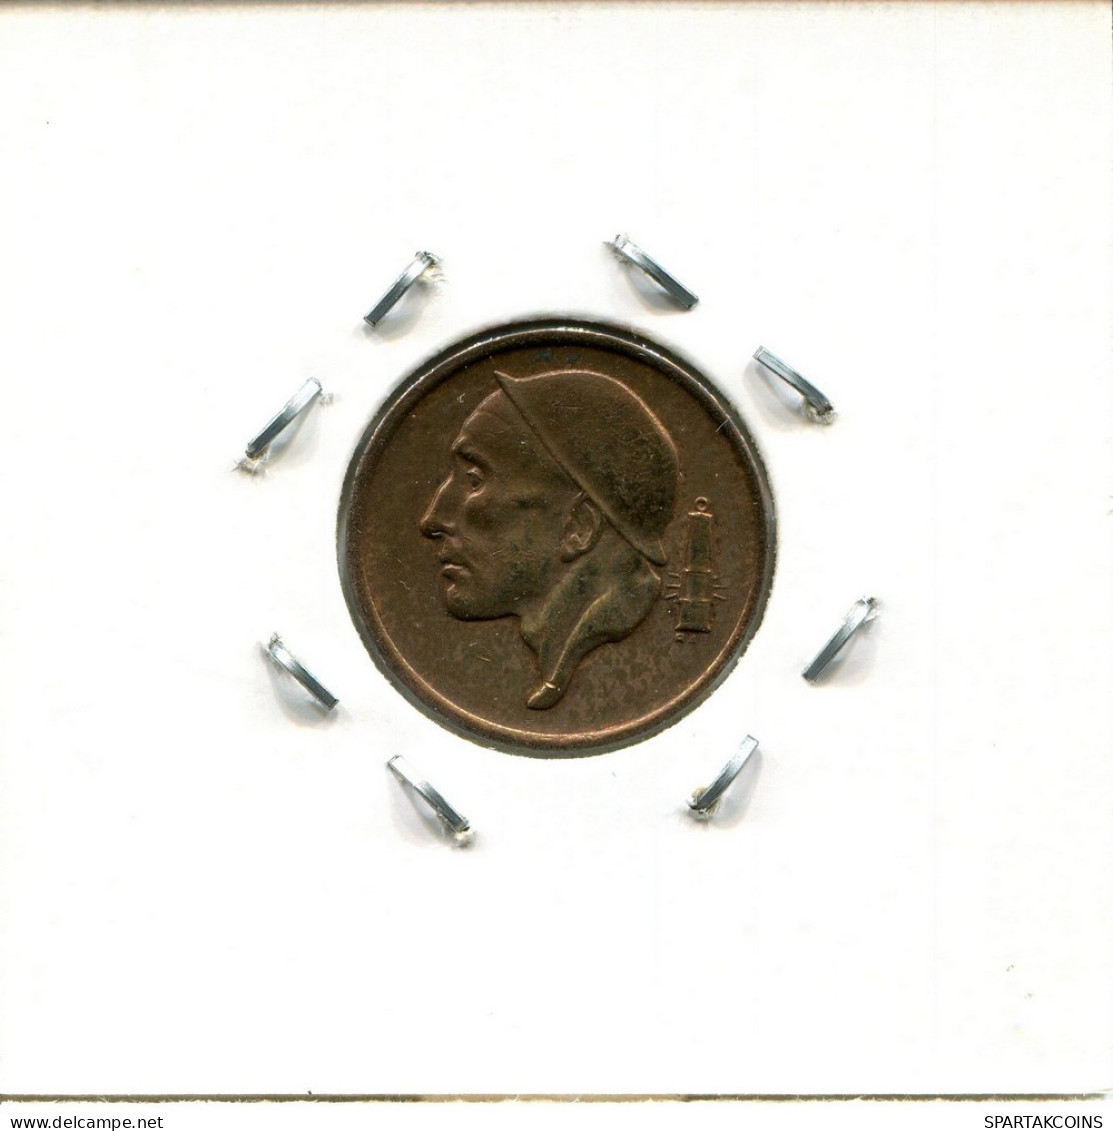 50 CENTIMES 1962 FRENCH Text BÉLGICA BELGIUM Moneda #BA450.E.A - 50 Centimes